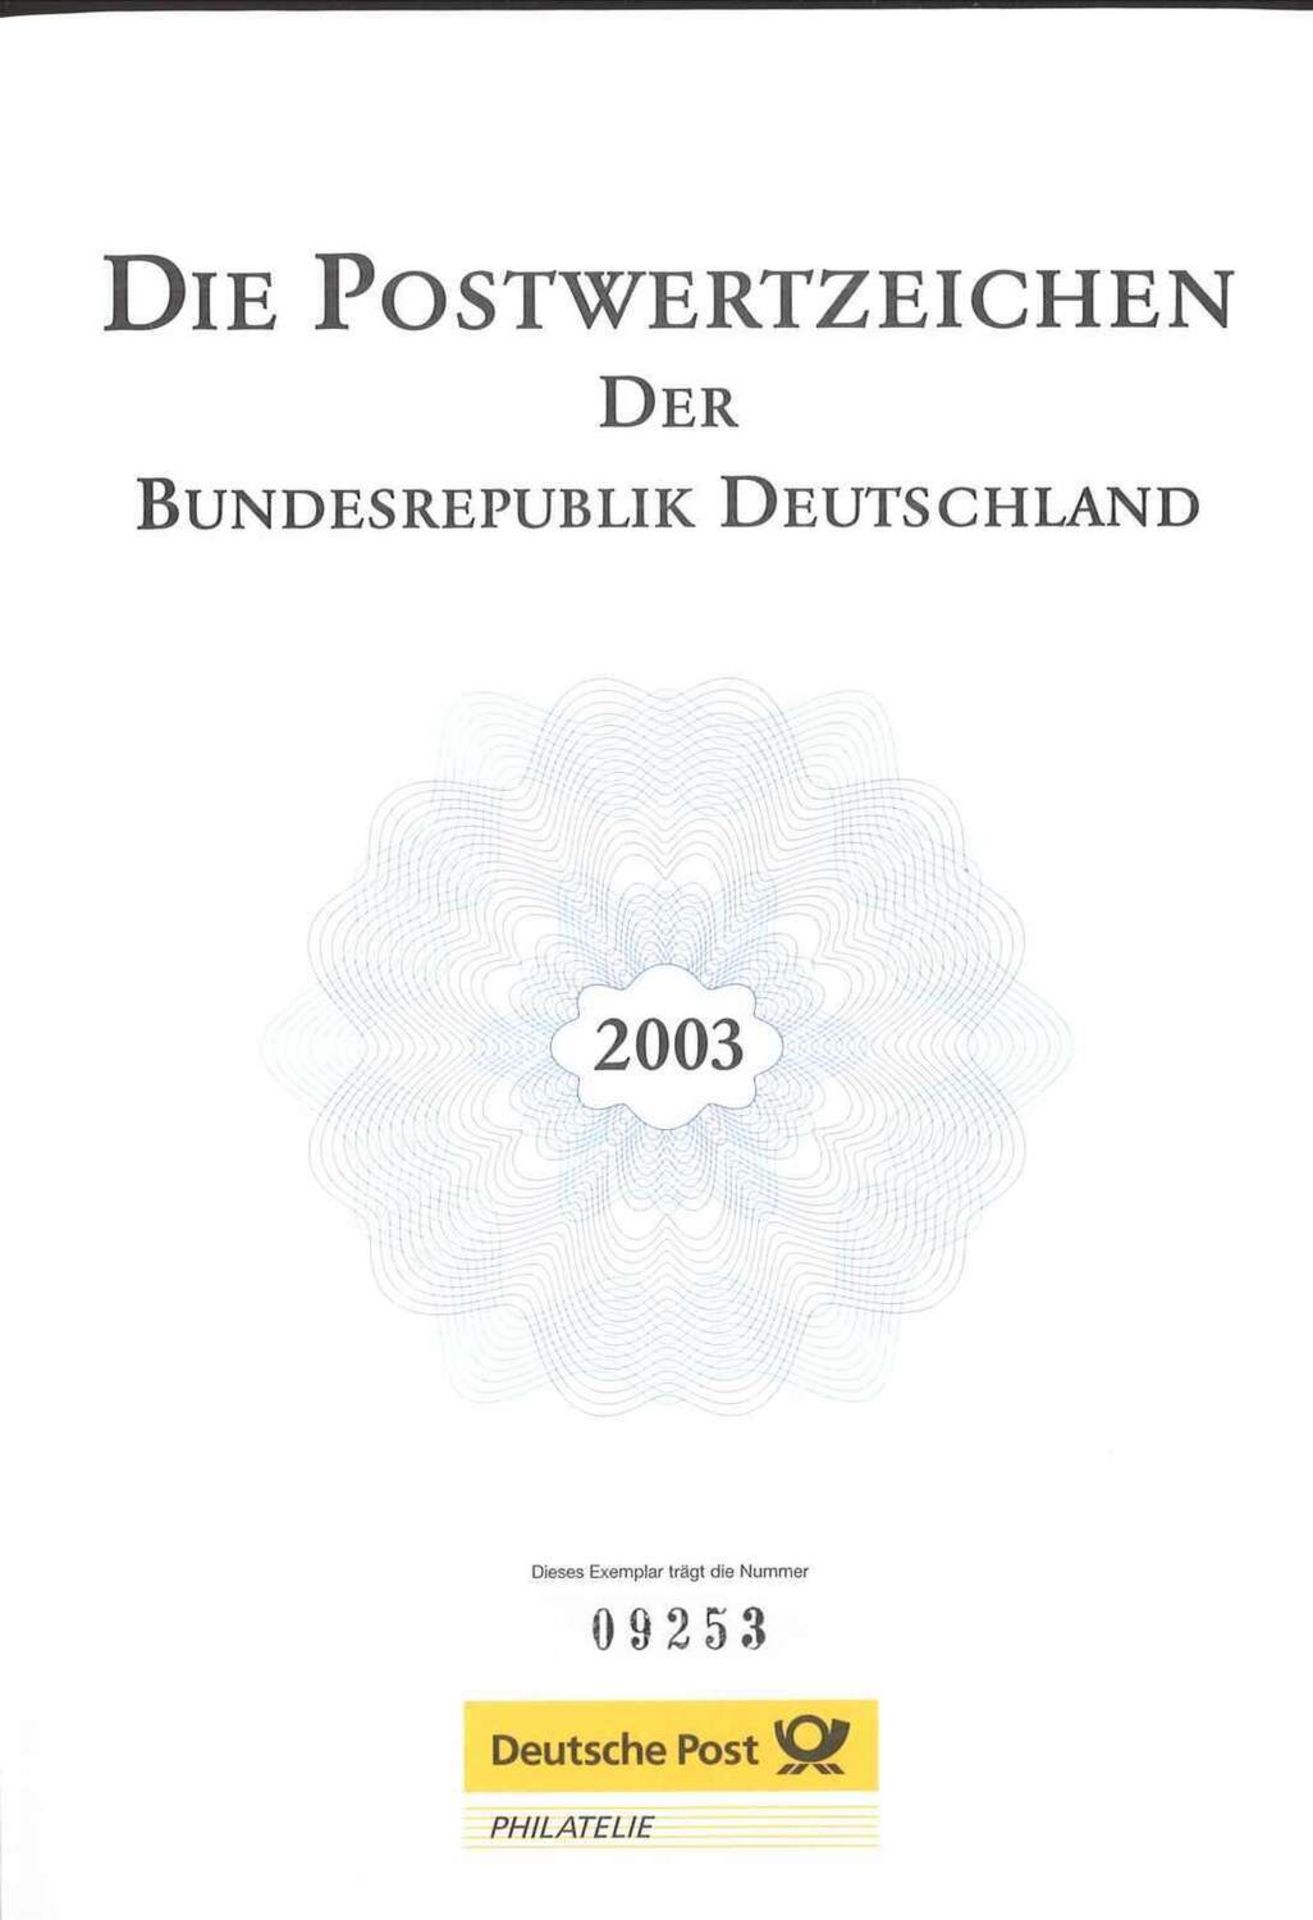 Die Postwertzeichen der BRD 2003 im Schuber. Marken postfrisch Frankaturware neu. Top Zustand. The